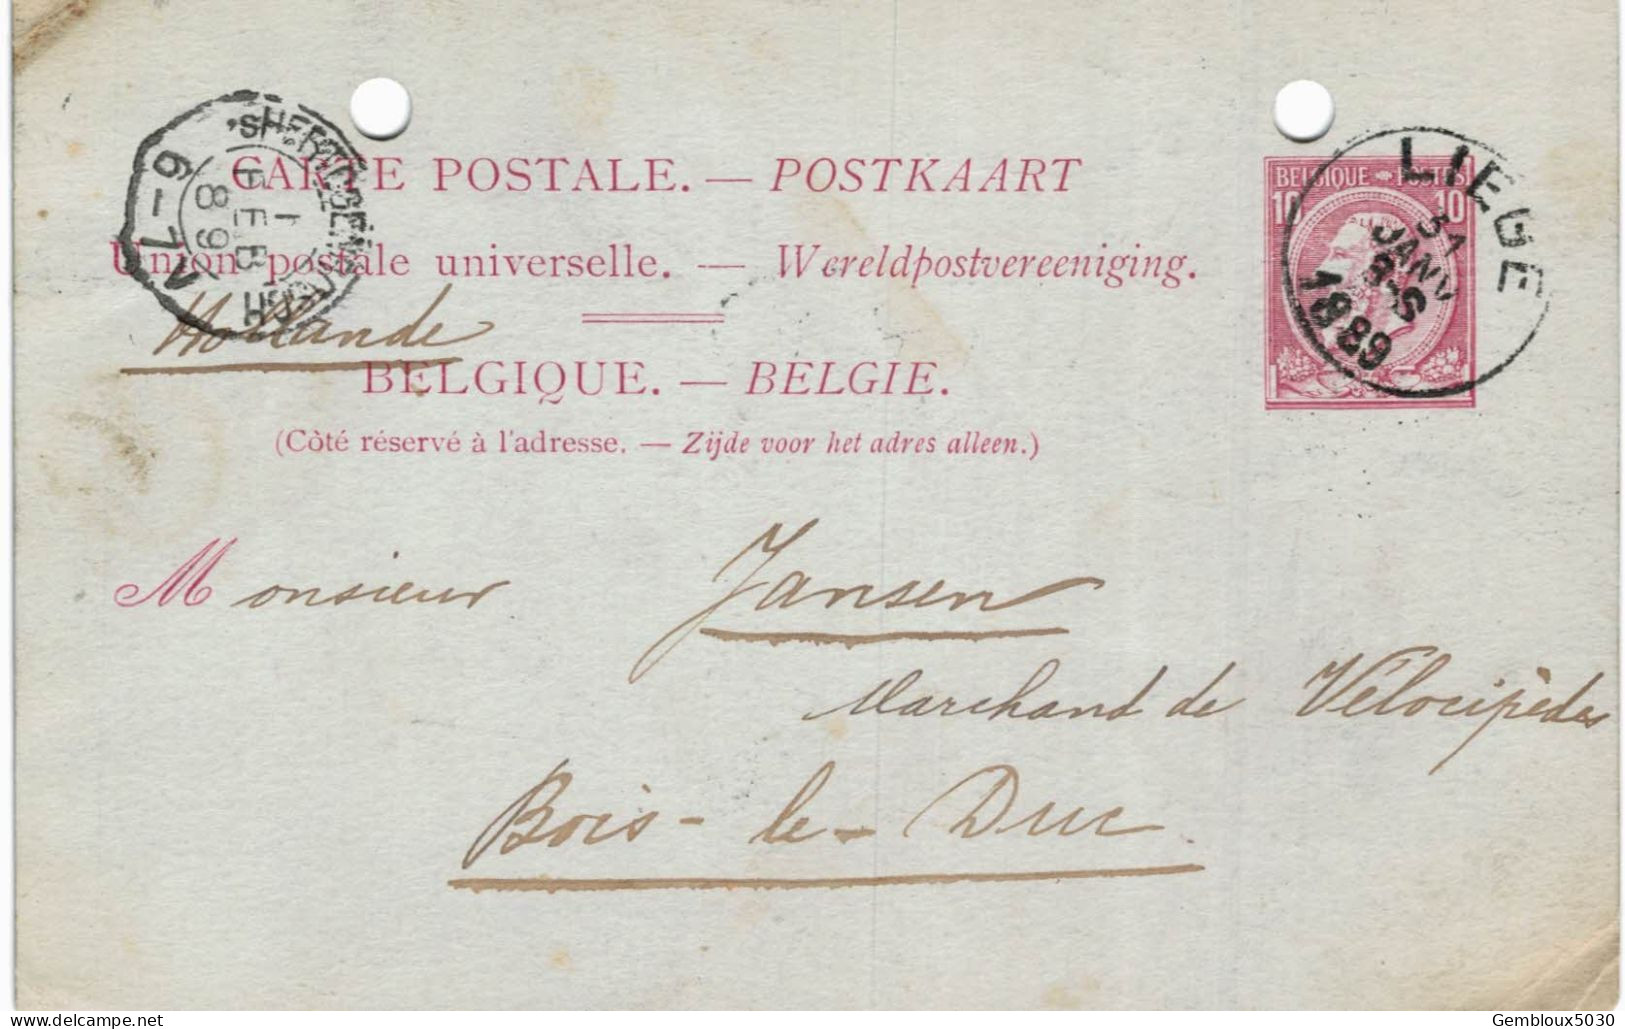 (Lot 02) Entier Postal  N° 46 écrit De Liège Vers Bois-le-Duc  (trous) - Postkarten 1871-1909